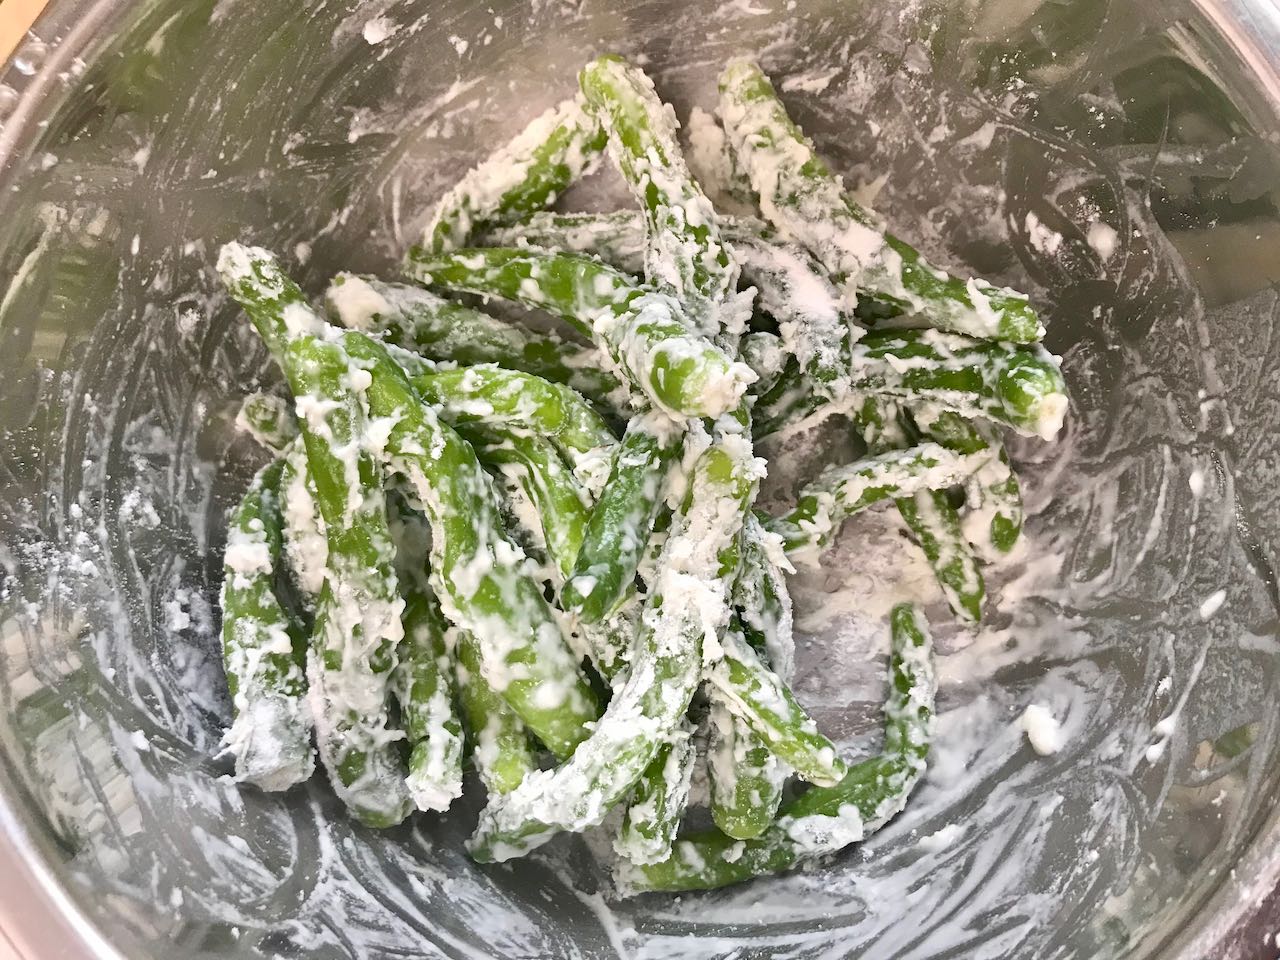 /lifelog/assets/2021-03-28-cooking-steamed-green-pepper-02.jpg